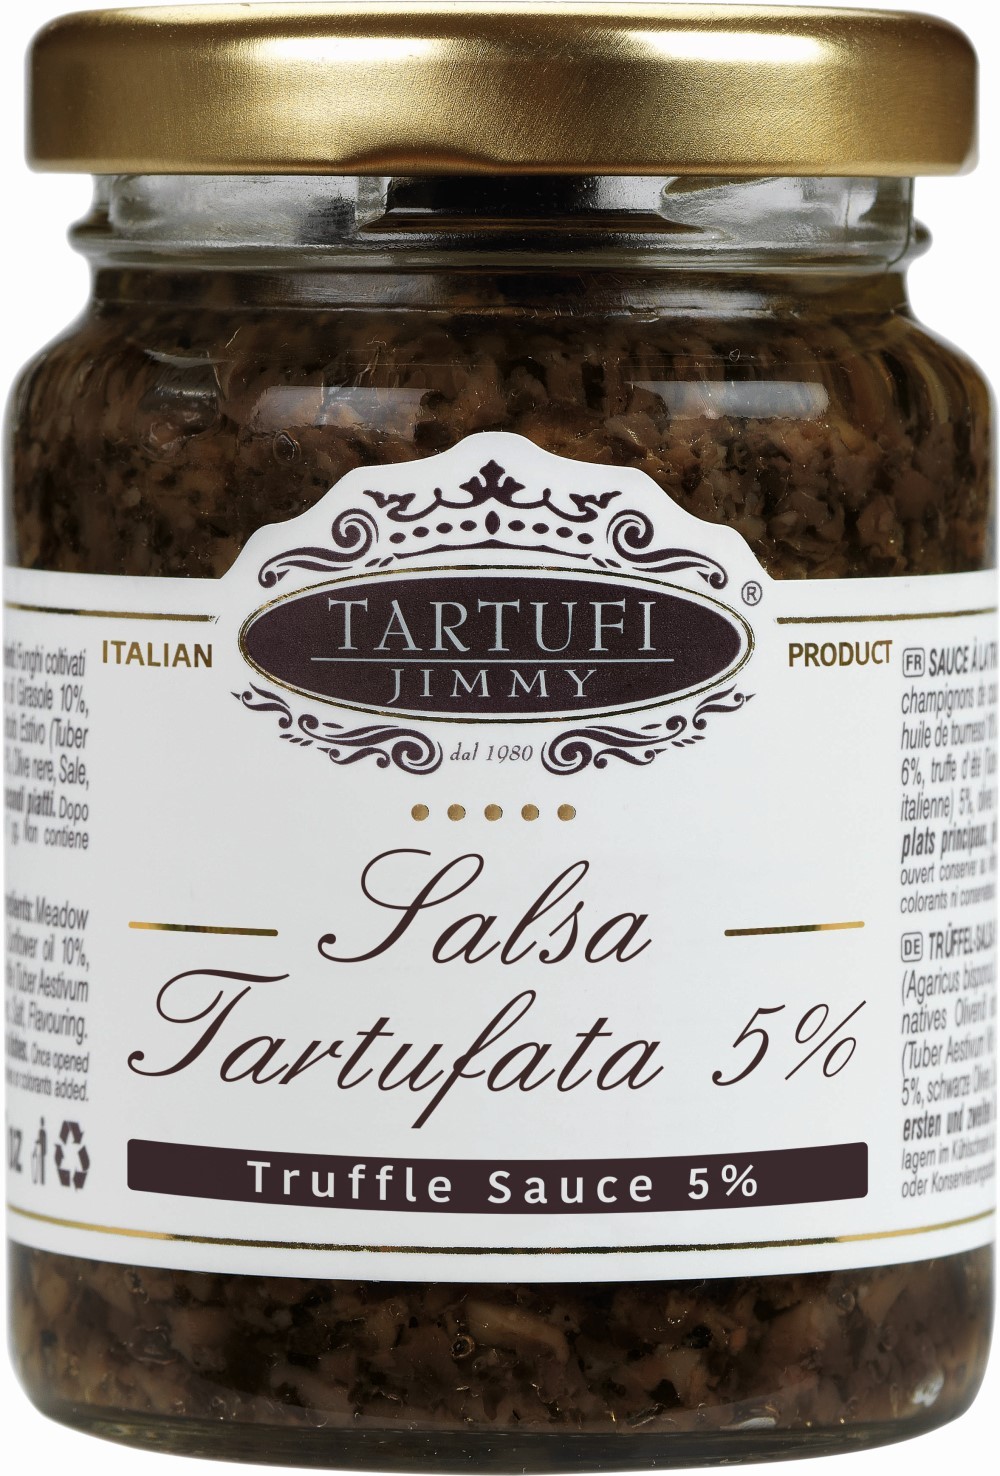 素食Tartufi Jimmy義大利松露蘑菇醬500公克 (Truffle Sauce)